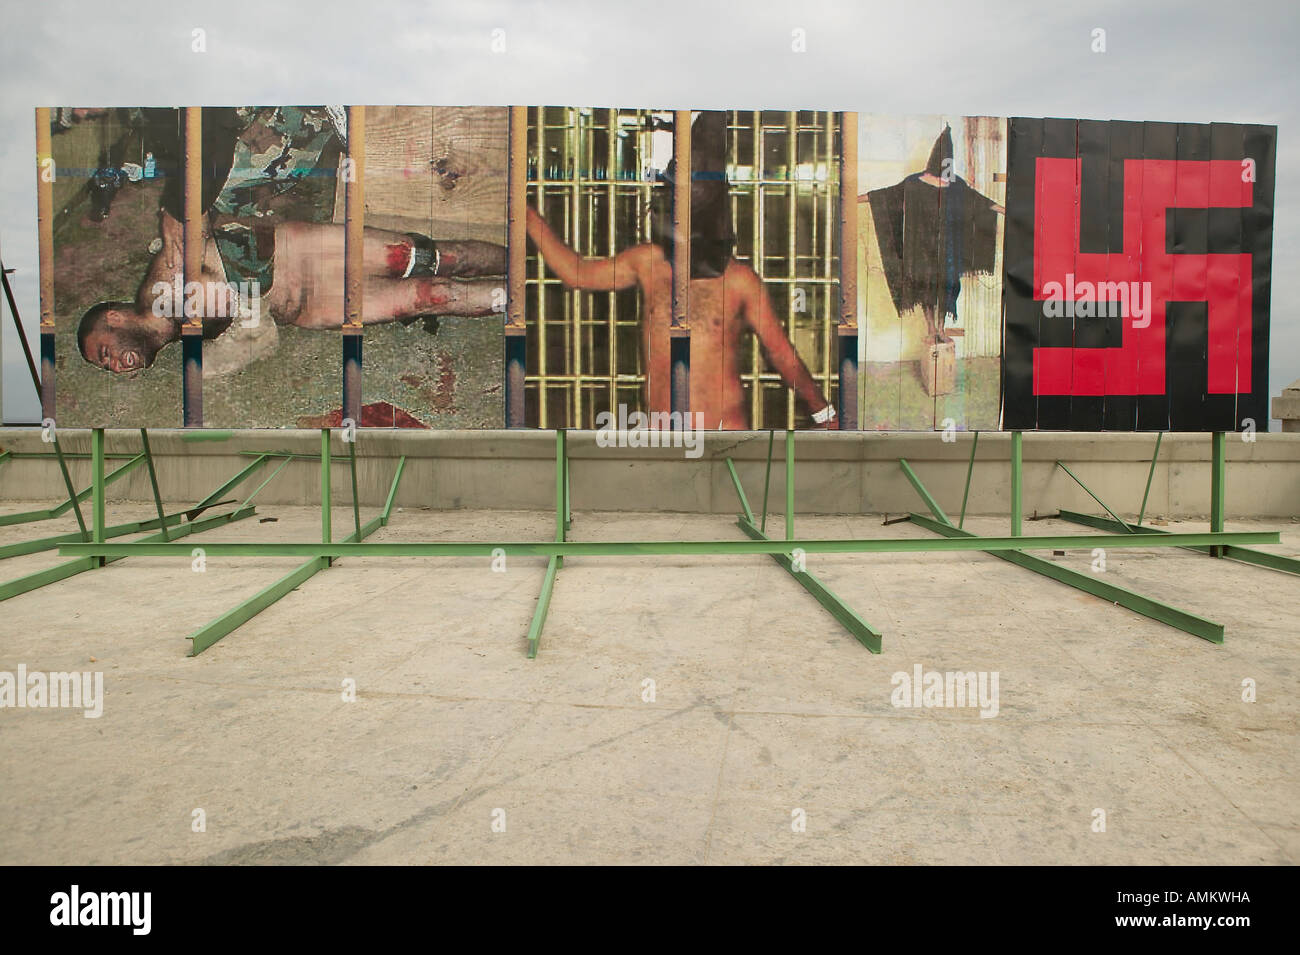 Politische Plakate zeigt Irak Abu-Ghraib-Gefängnis Missbrauch Bilder bei amerikanischen Botschaft in Havanna Kuba Stockfoto